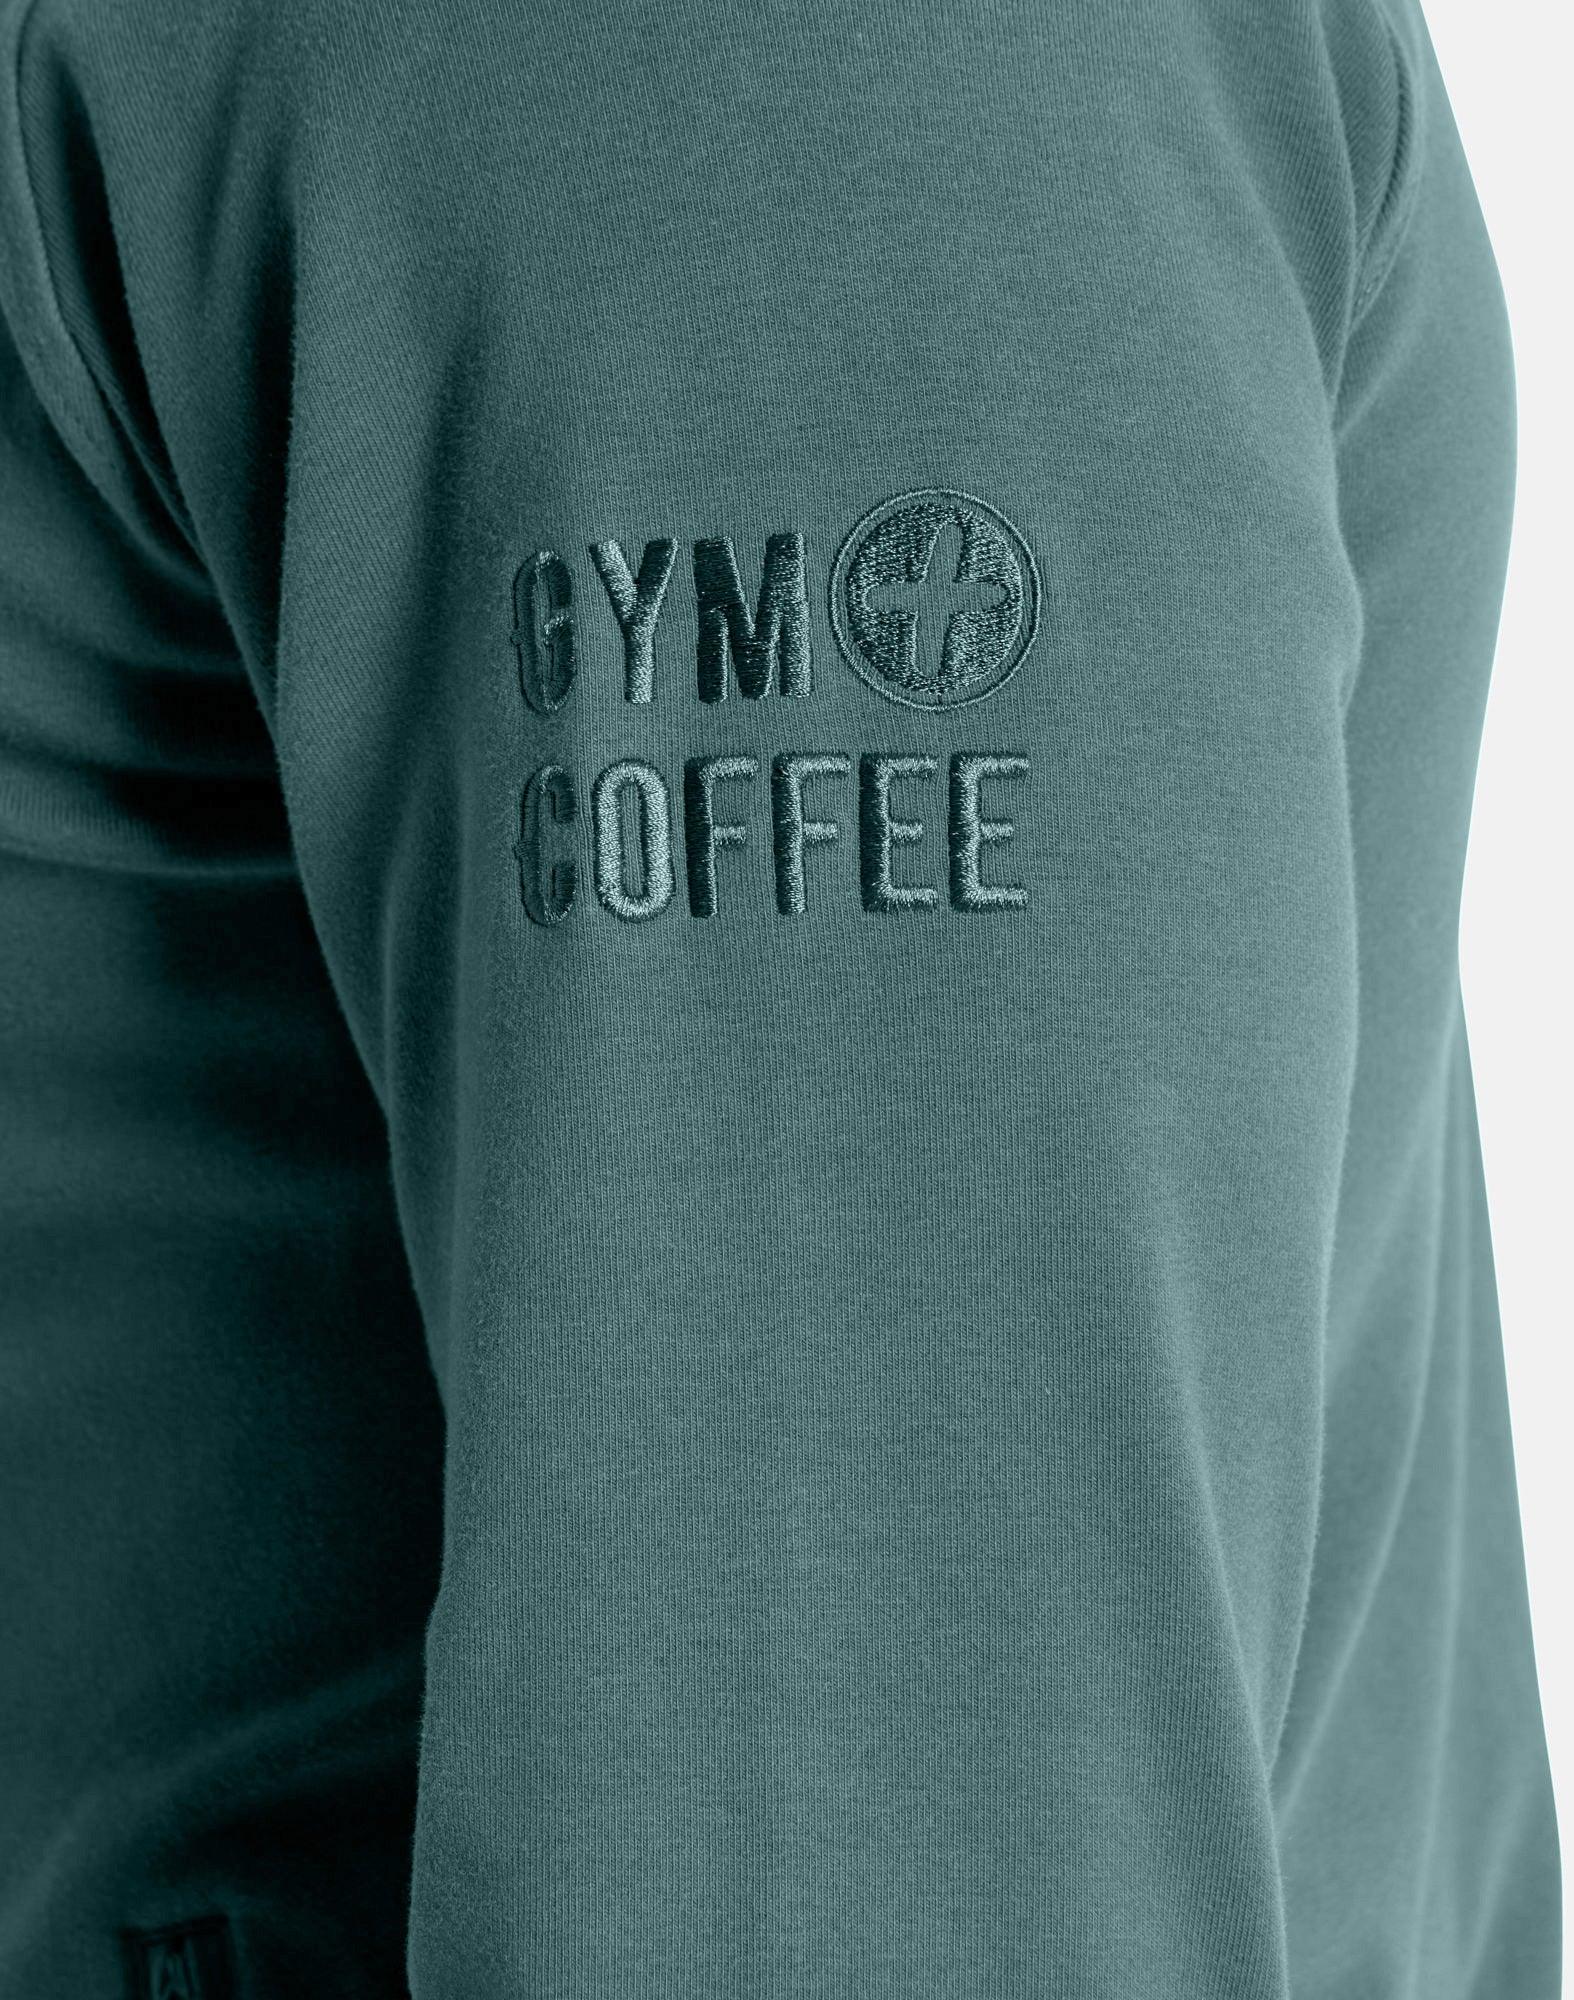 Essential Zip Hoodie in Fern Green - Hoodies - Gym+Coffee